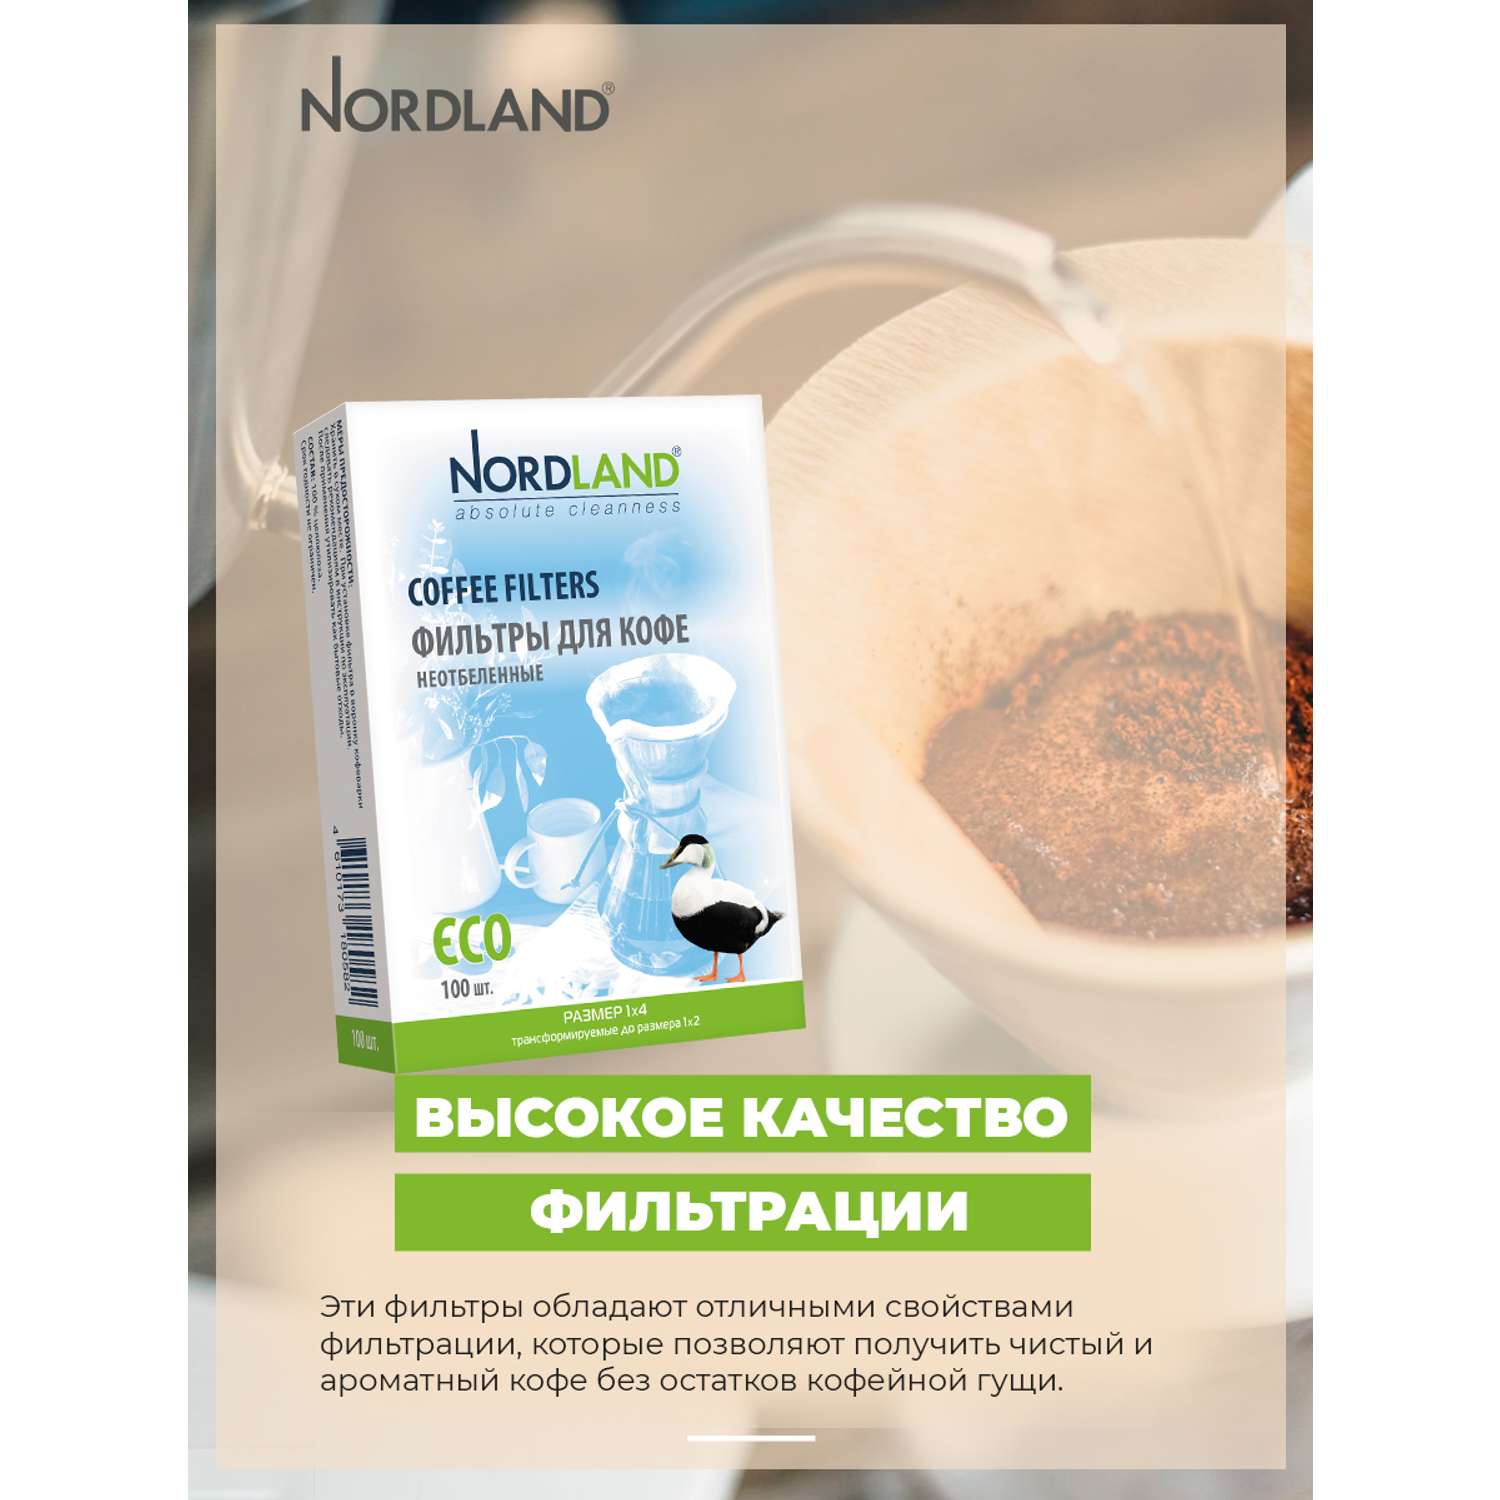 Фильтры Nordland для кофе неотбеленные размер 1х4. 100 шт. в коробке - фото 10